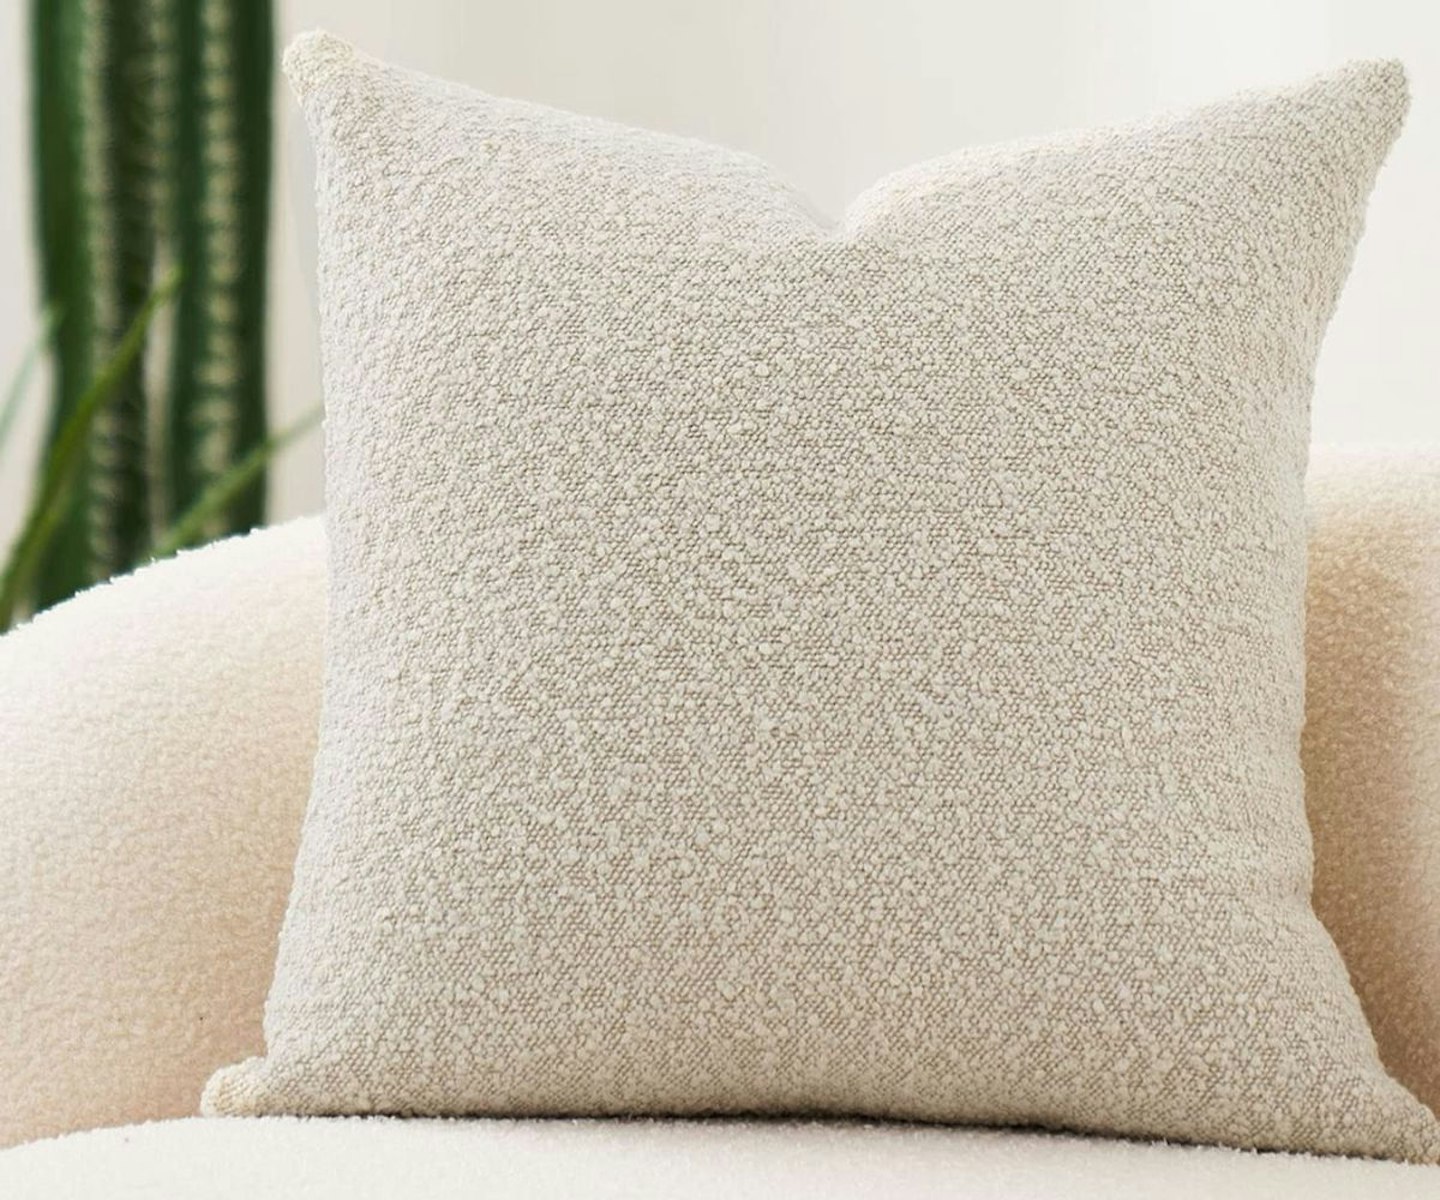  DOMVITUS Luxury Decorative Throw Pillow Cover